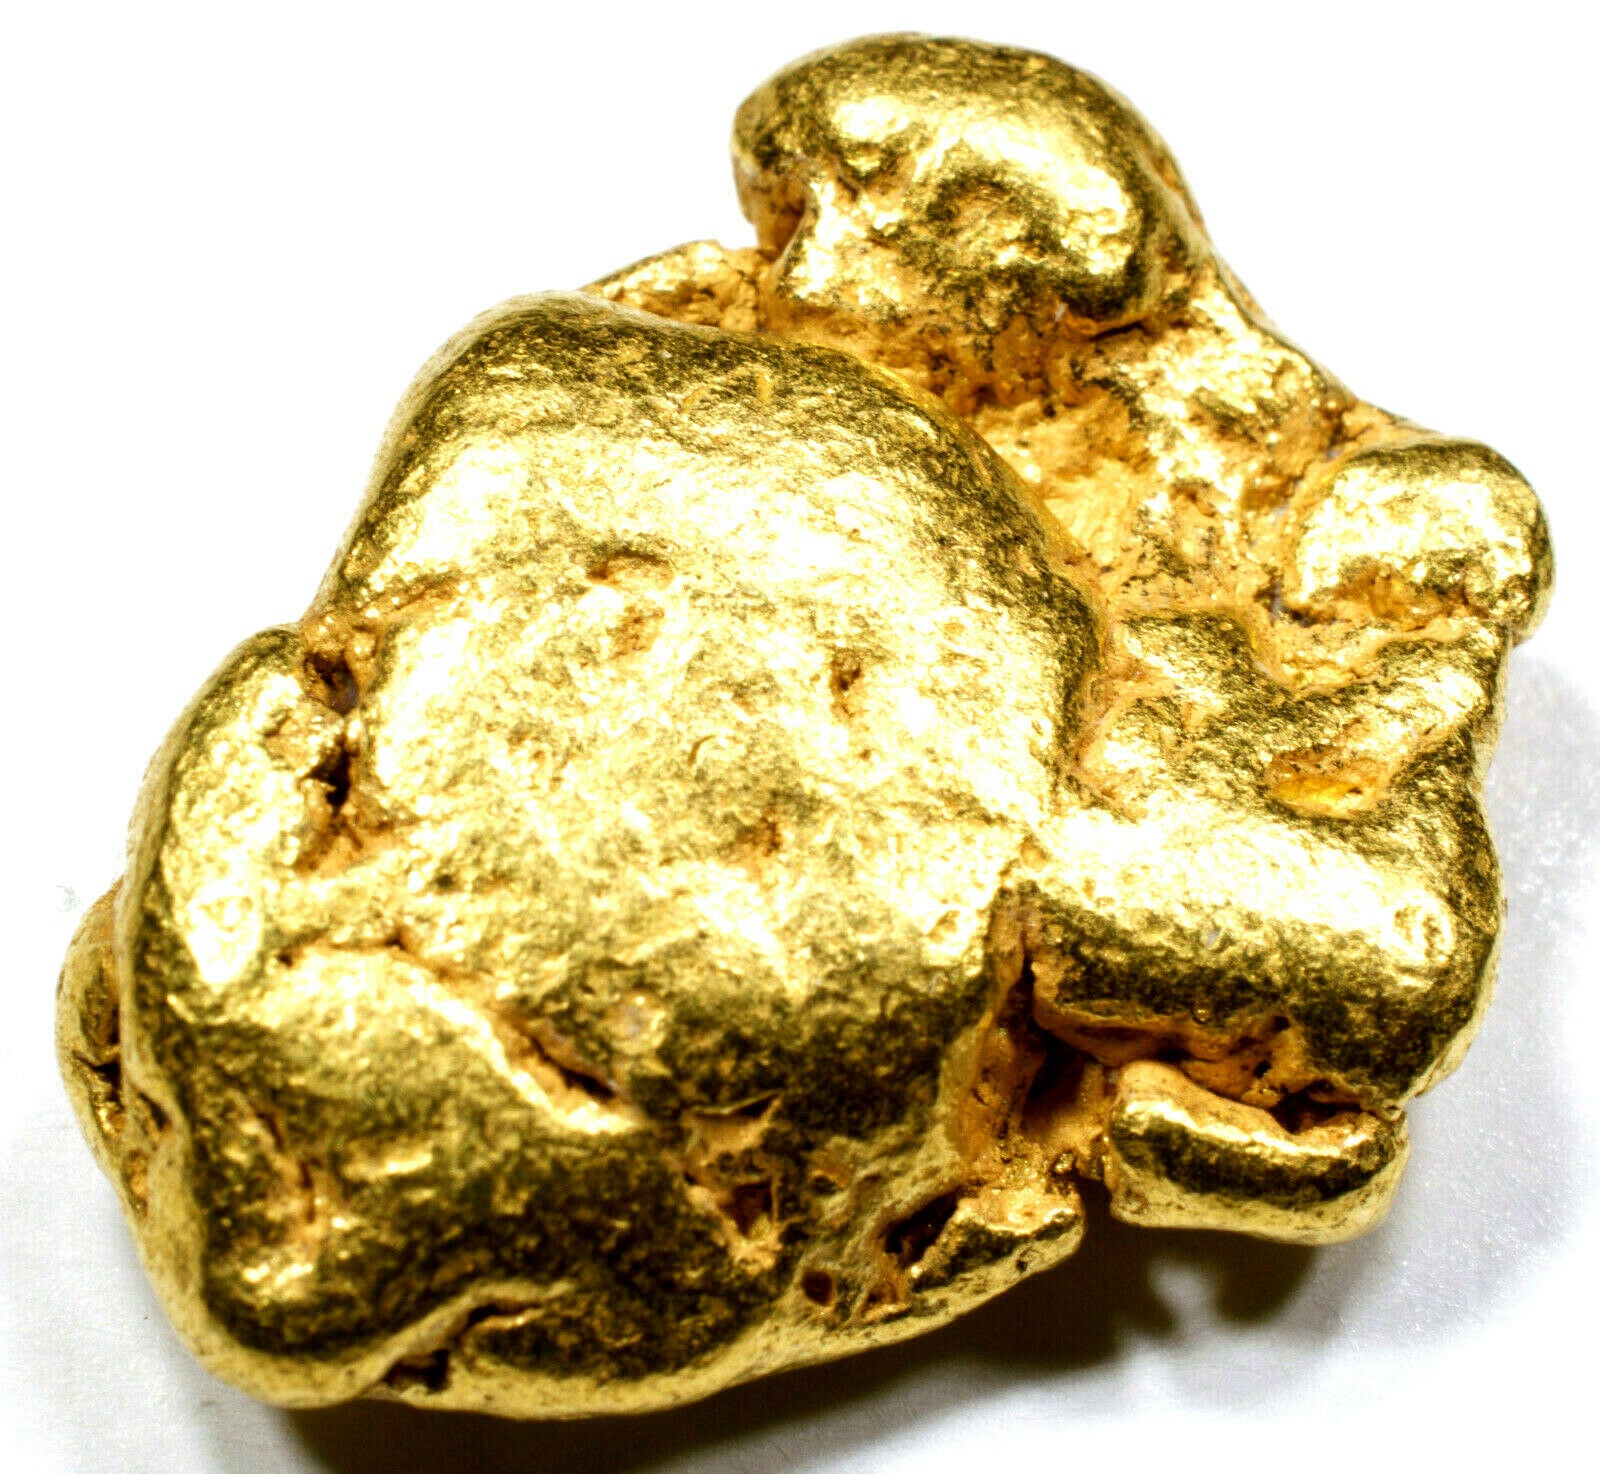 13.535 GRAMS ALASKAN YUKON NATURAL PURE GOLD NUGGET GENUINE (#N901) A GRADE - Liquidbullion